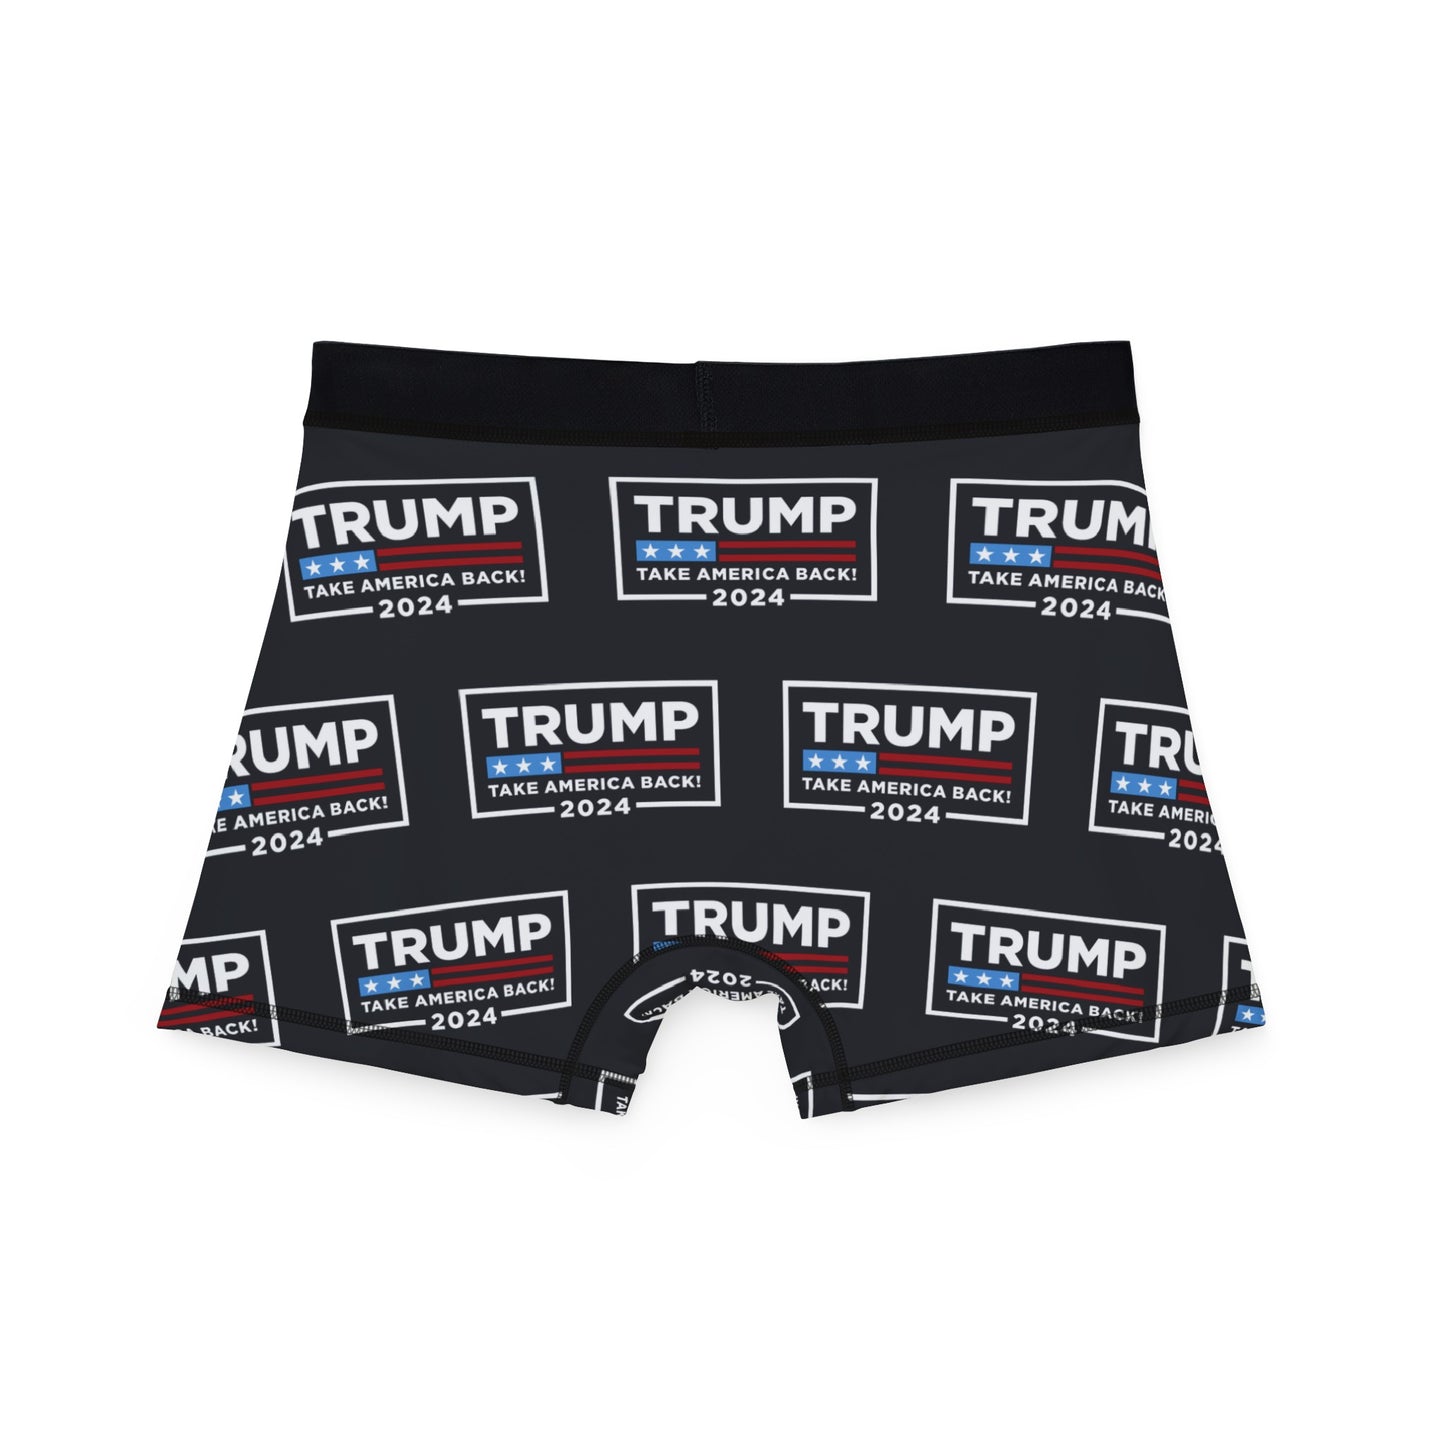 Trump 2024 Take America Back Black MAGA All over Men's Boxer Briefs Underwear